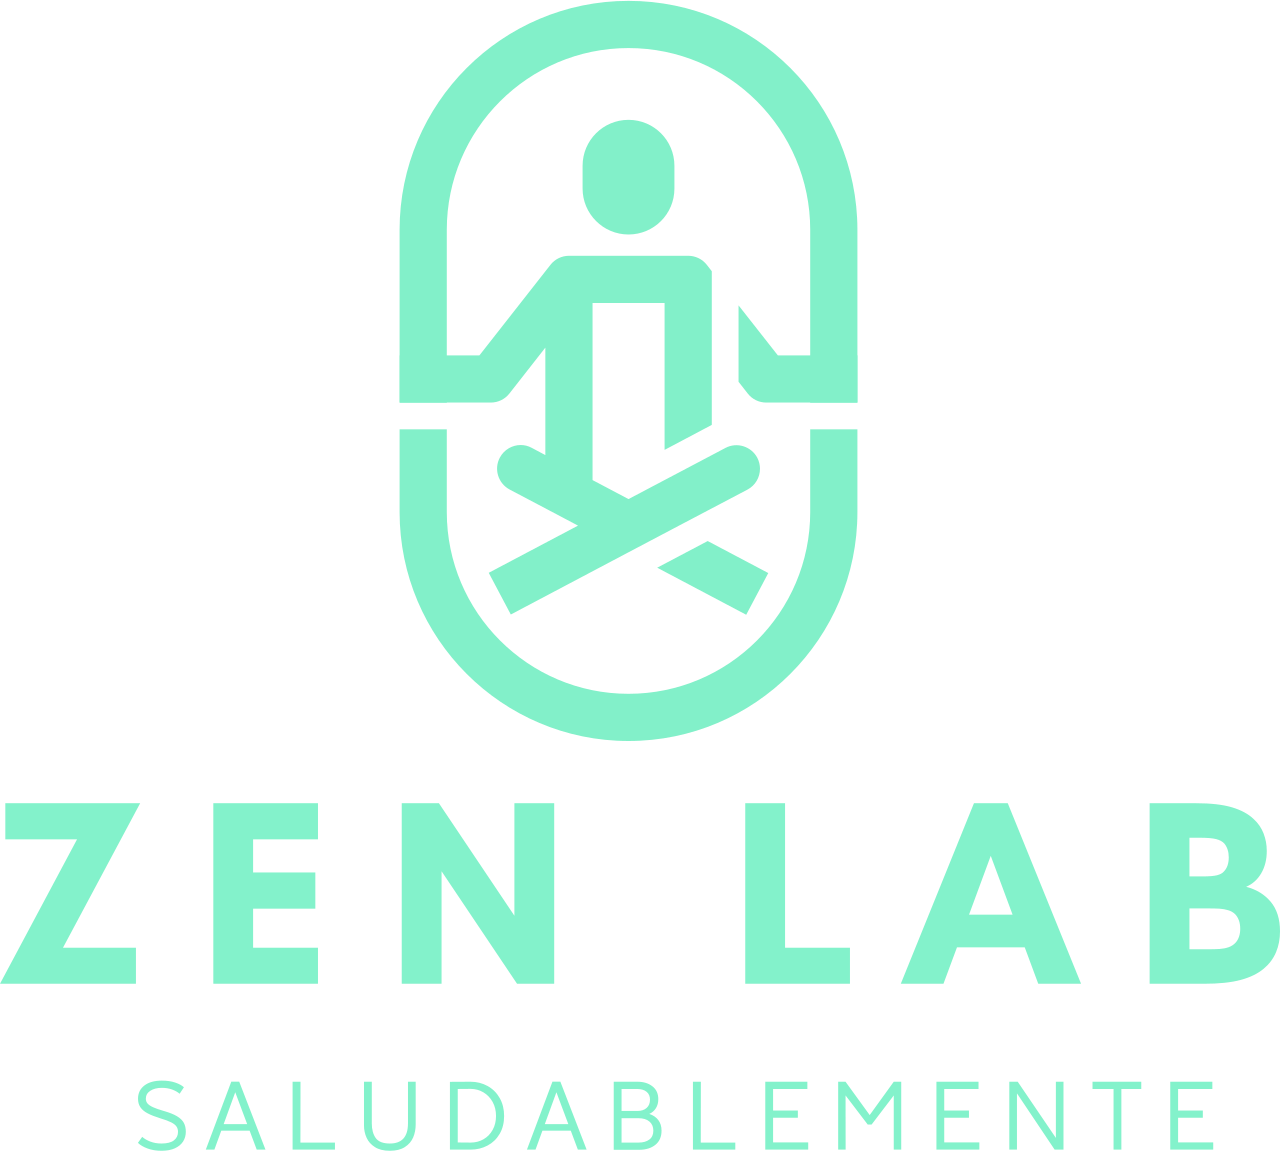 ZEN LAB's logo